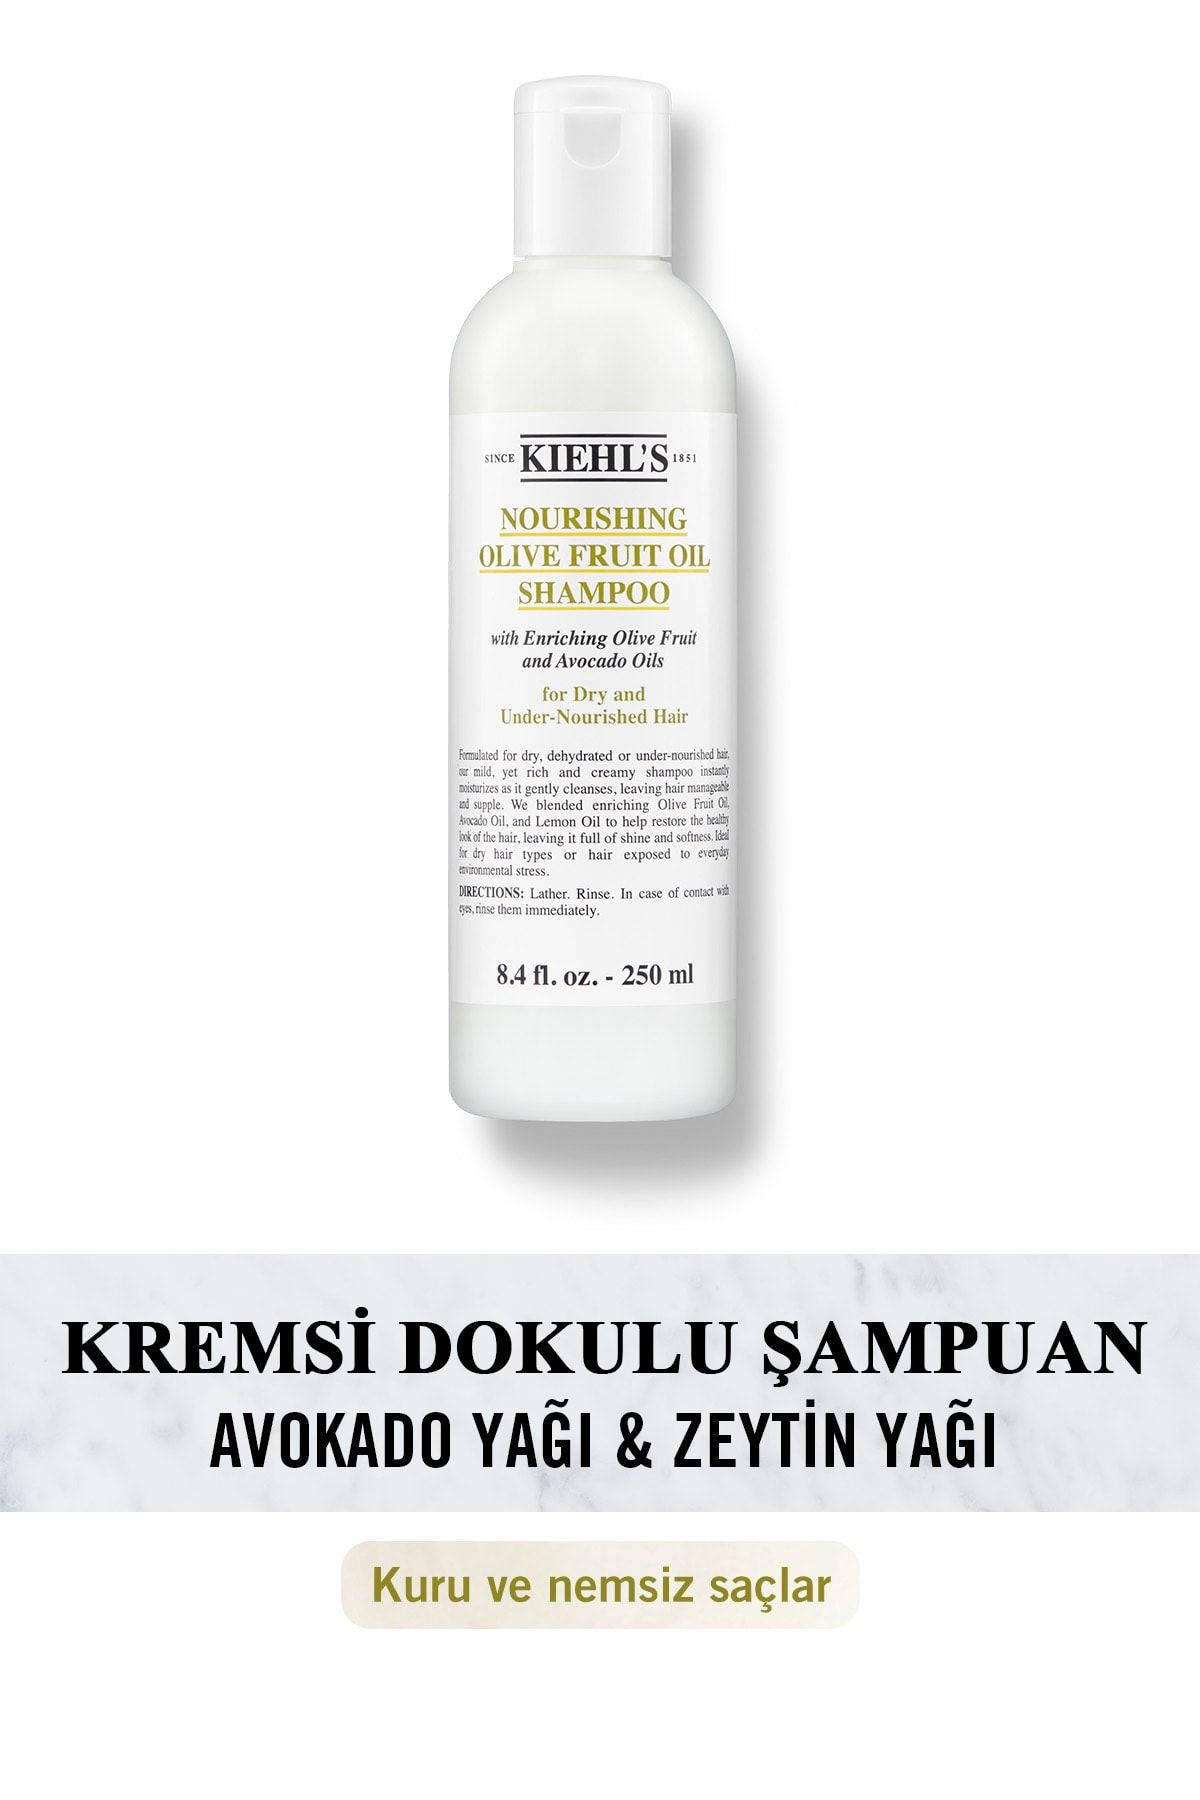 Kiehl's Olive Fruit Oil Nemsiz Saçlar Için Zeytin Yağı Içeren Besleyici Şampuan 250 ml